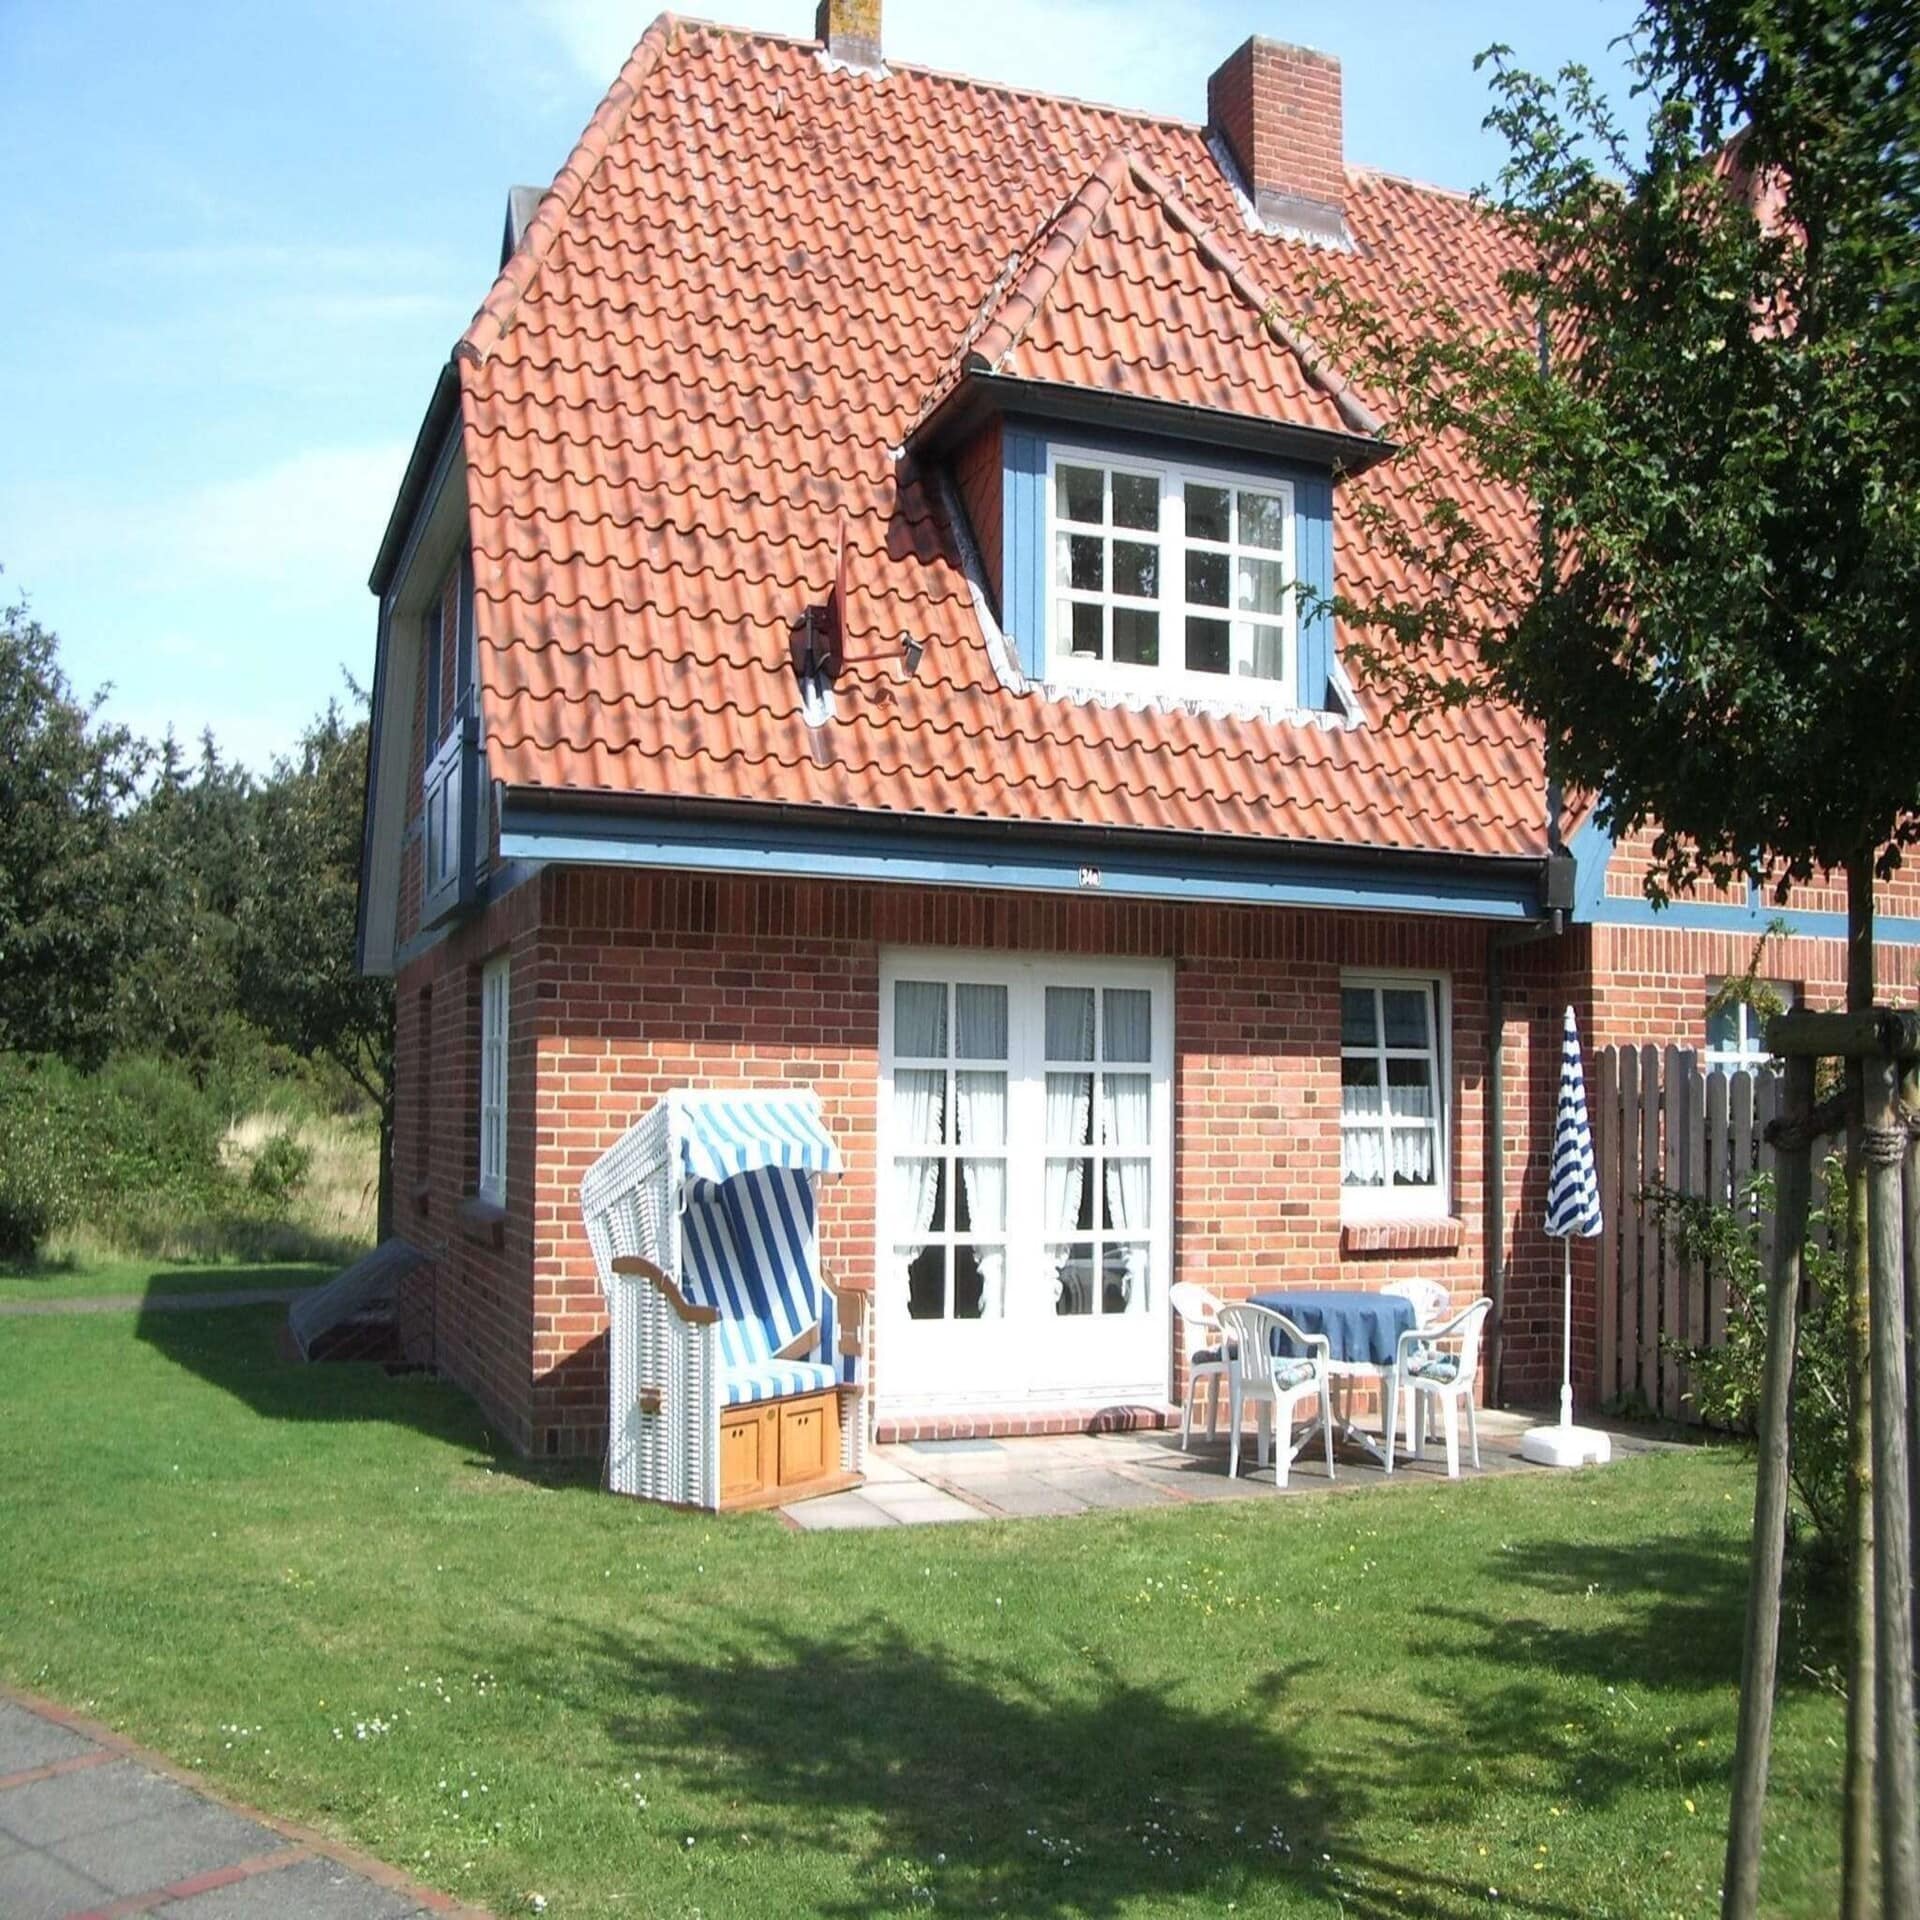  Rotes Friesenhaus mit weißen Fenstern. Blau-weiß gestreifter Strandkorb und Gartenmöbel stehen auf der Terrasse.